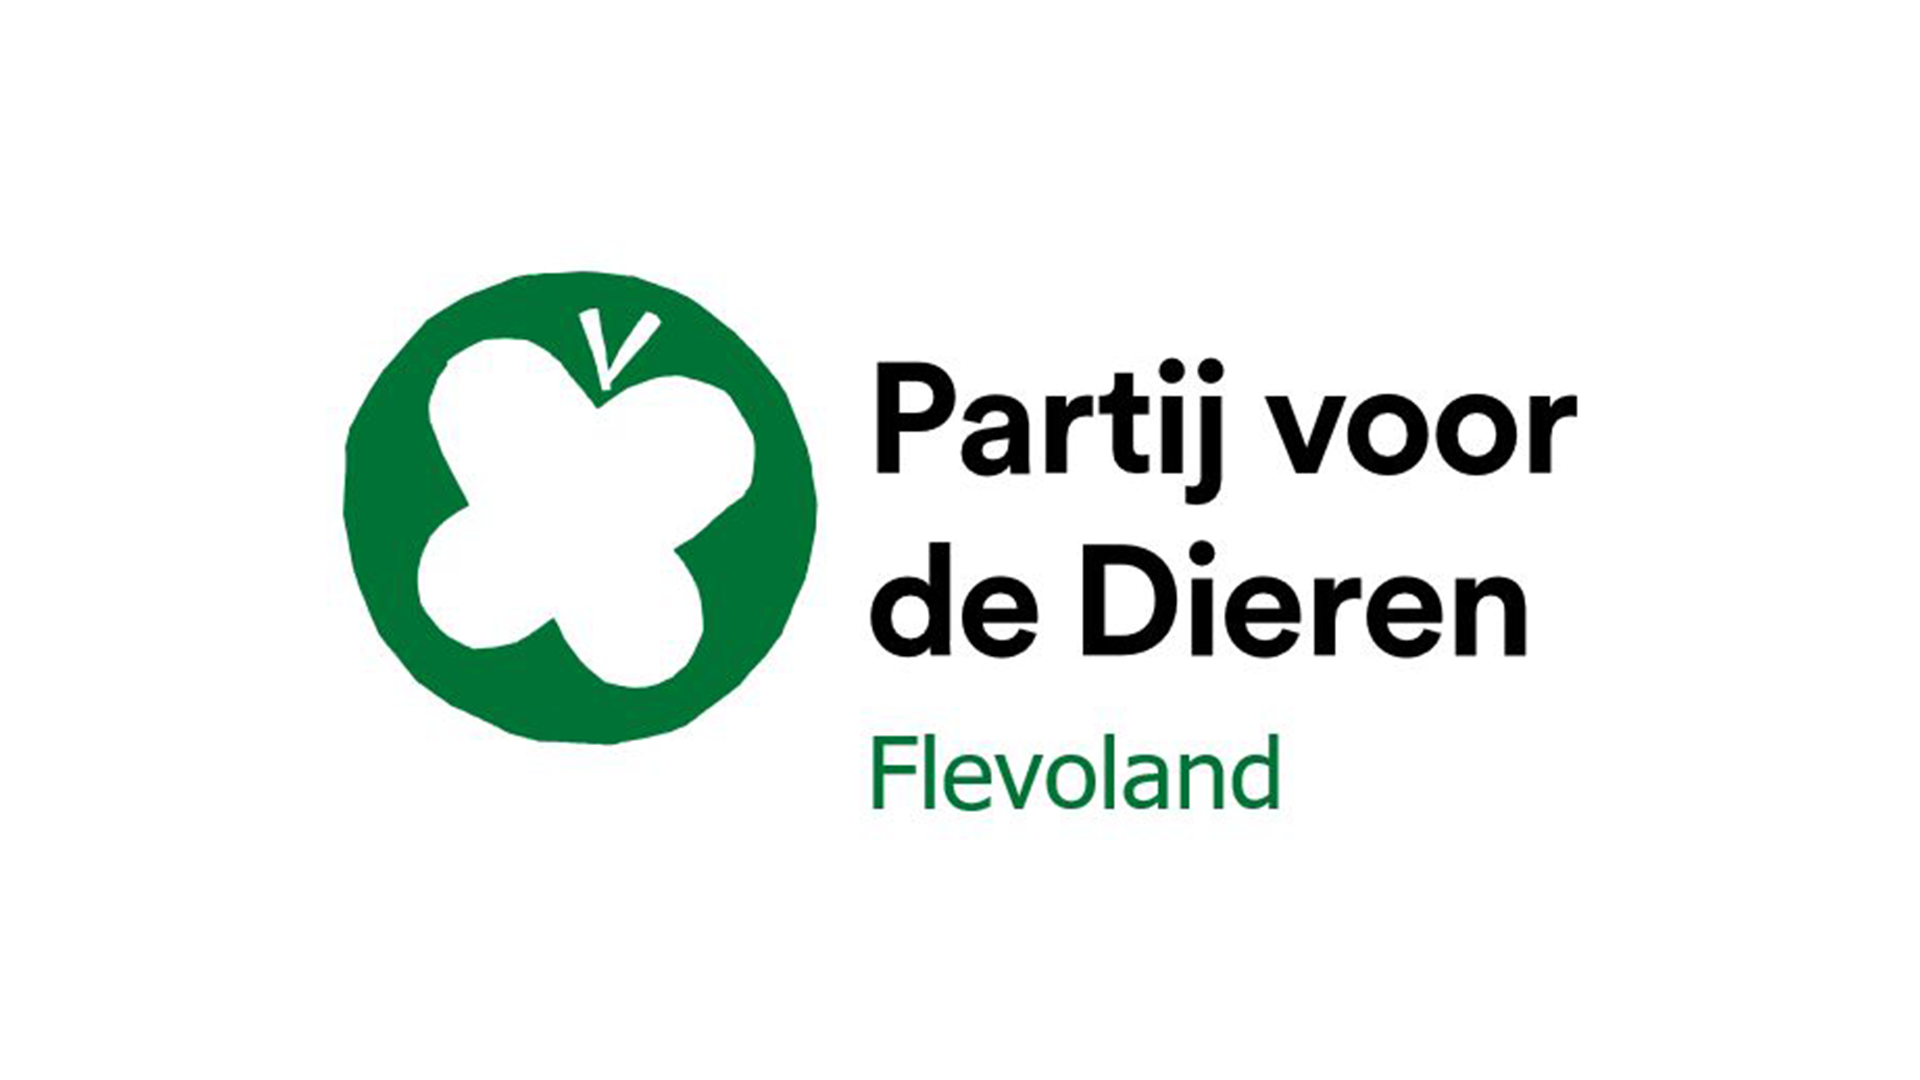 PVD logo